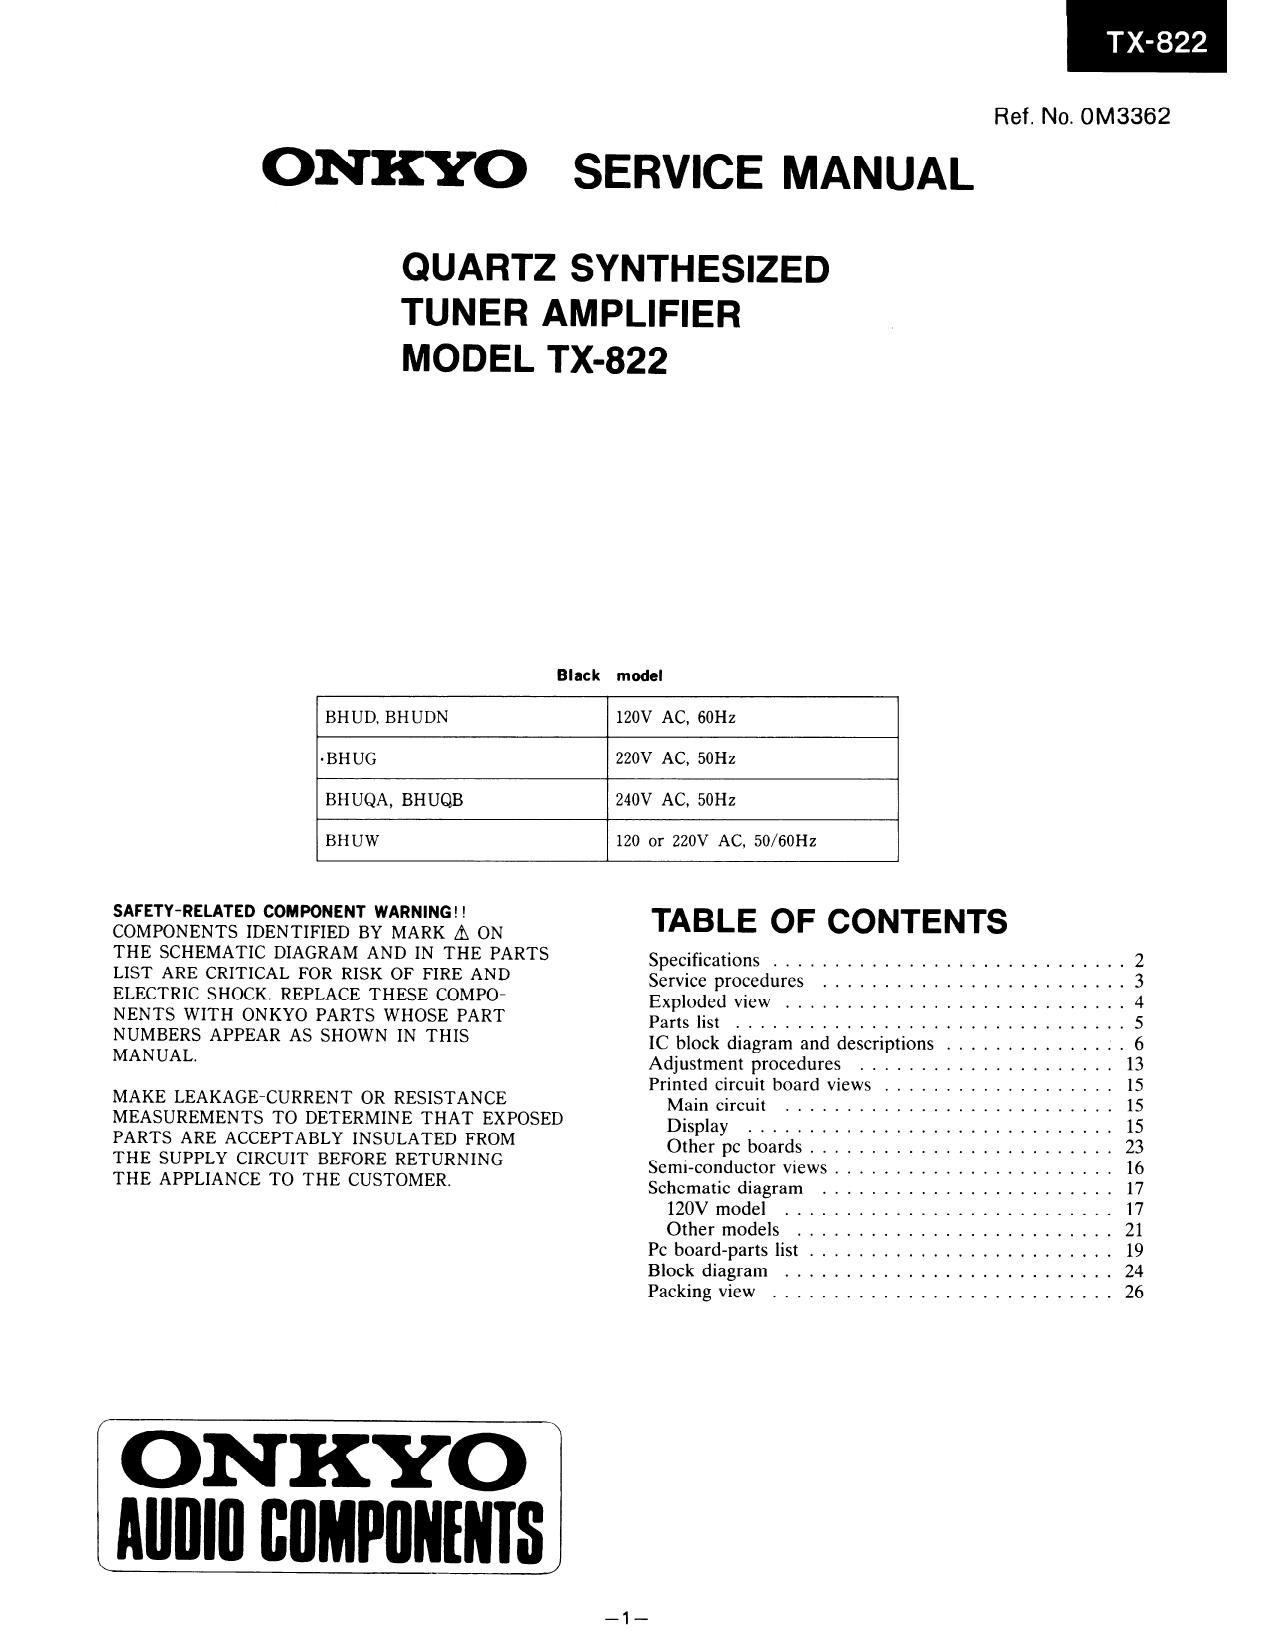 Onkyo TX 822 Service Manual